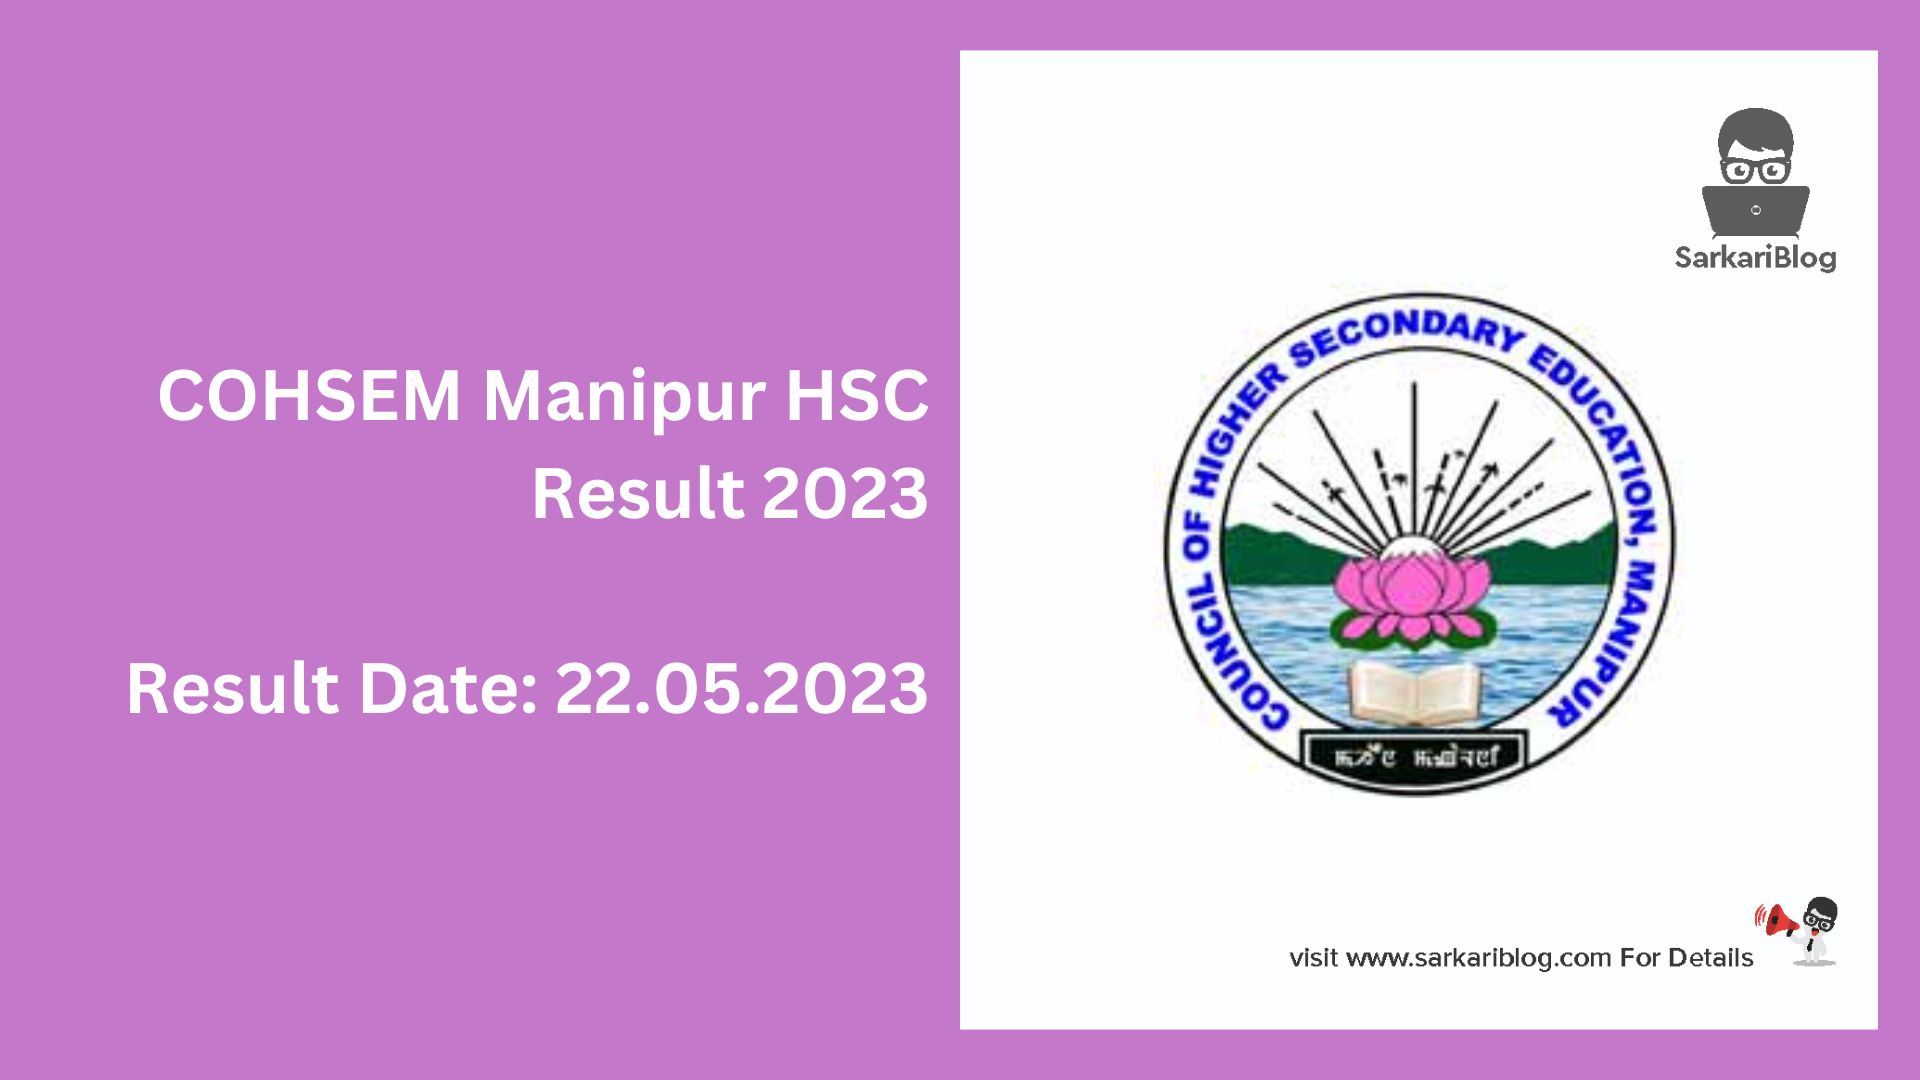 COHSEM Manipur HSC Result 2023